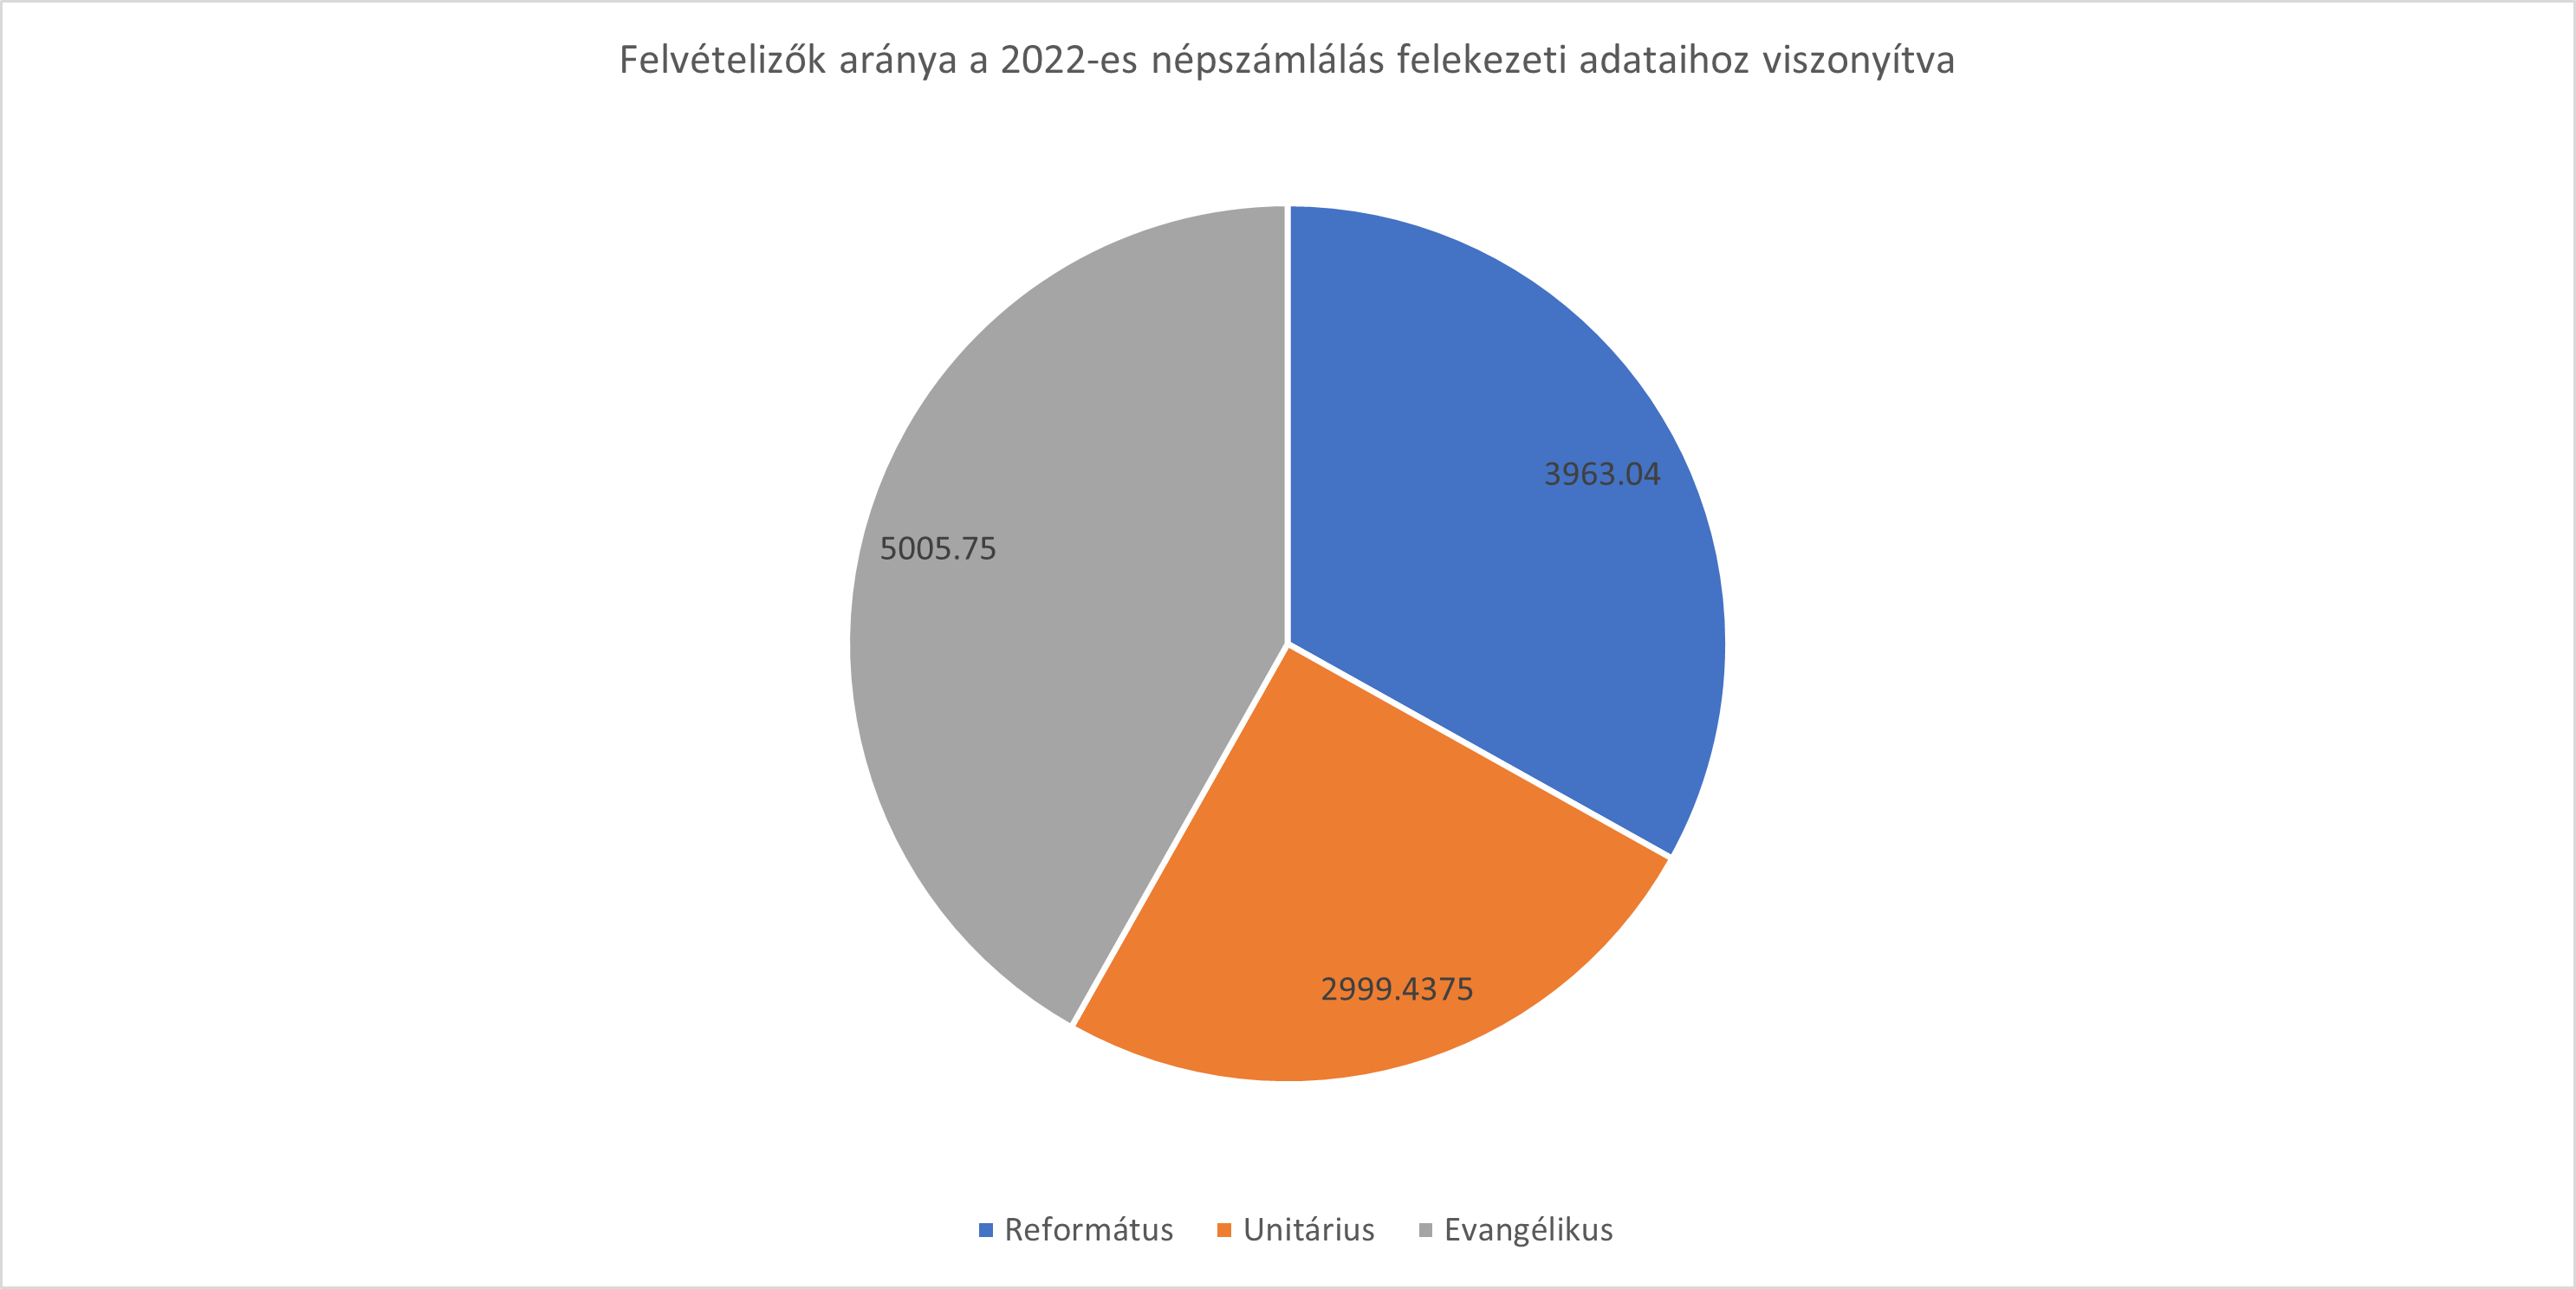 2019-2023 felvételizők felekezet szerinti aránya a 2022-es népszámlálási adatokhoz viszonyítva